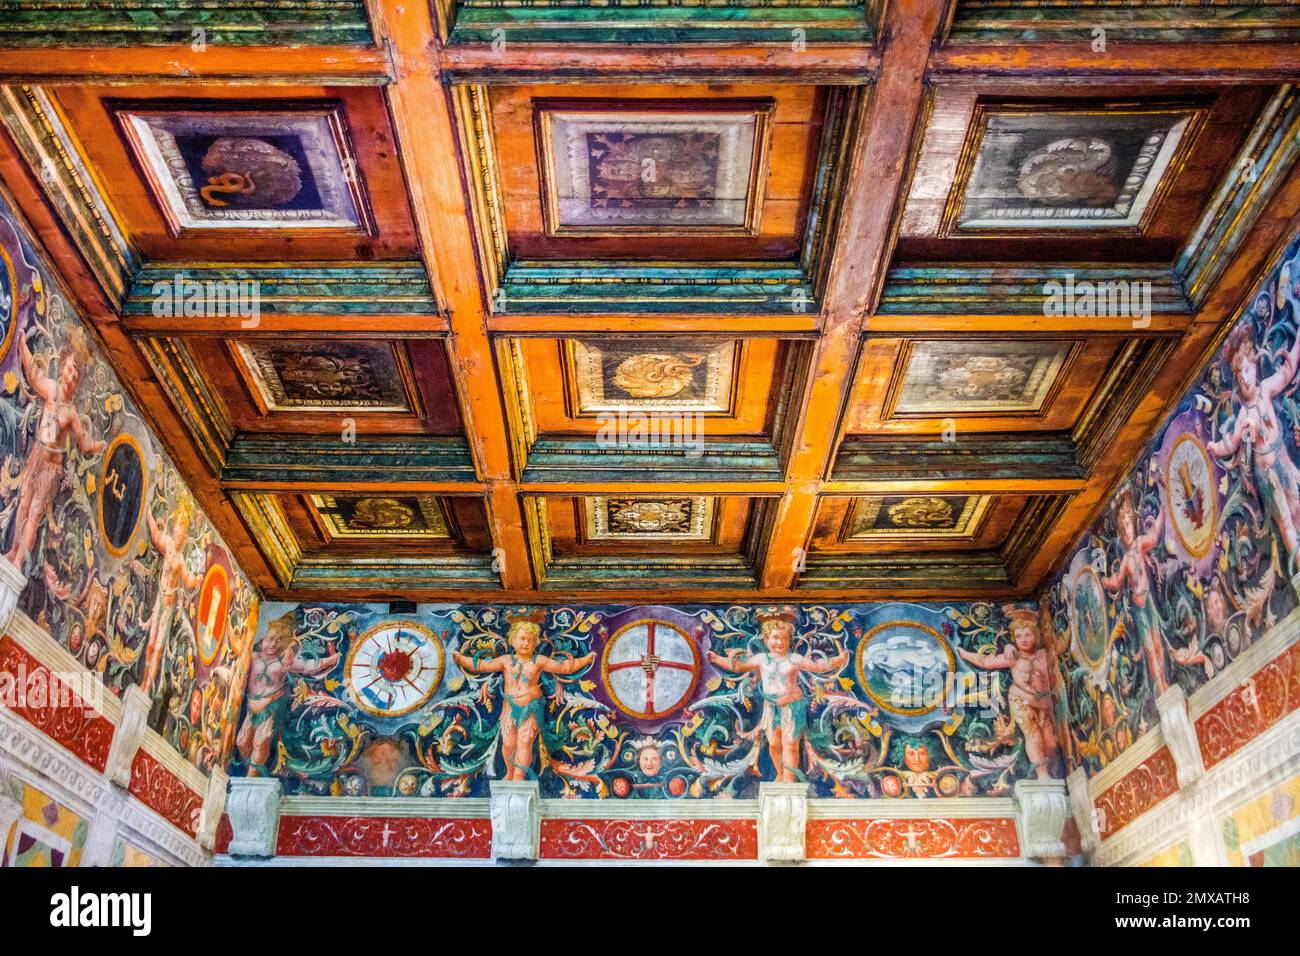 Room of Ovid or the Metamorphoses, Anselmo Guazzi and Agostino da Mozzanica, 1527, Palazzo Te, pleasure palace, Mantua, Lombardy, Italy, Mantua Stock Photo